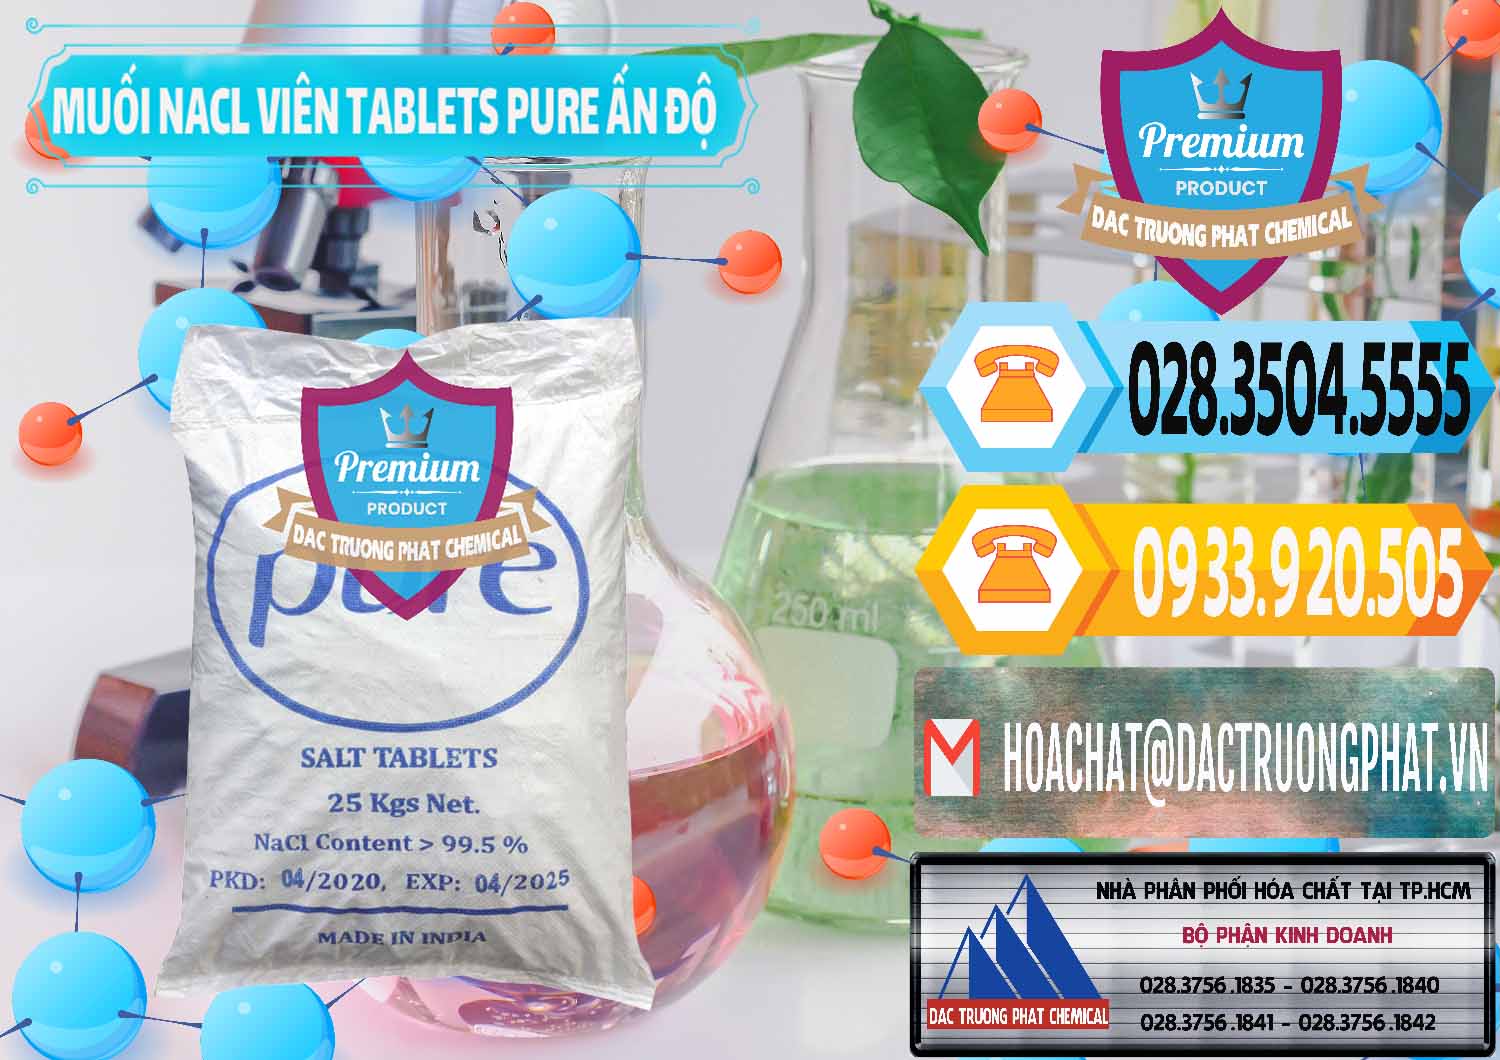 Cty kinh doanh và bán Muối NaCL – Sodium Chloride Dạng Viên Tablets Pure Ấn Độ India - 0294 - Nơi phân phối và cung cấp hóa chất tại TP.HCM - hoachattayrua.net